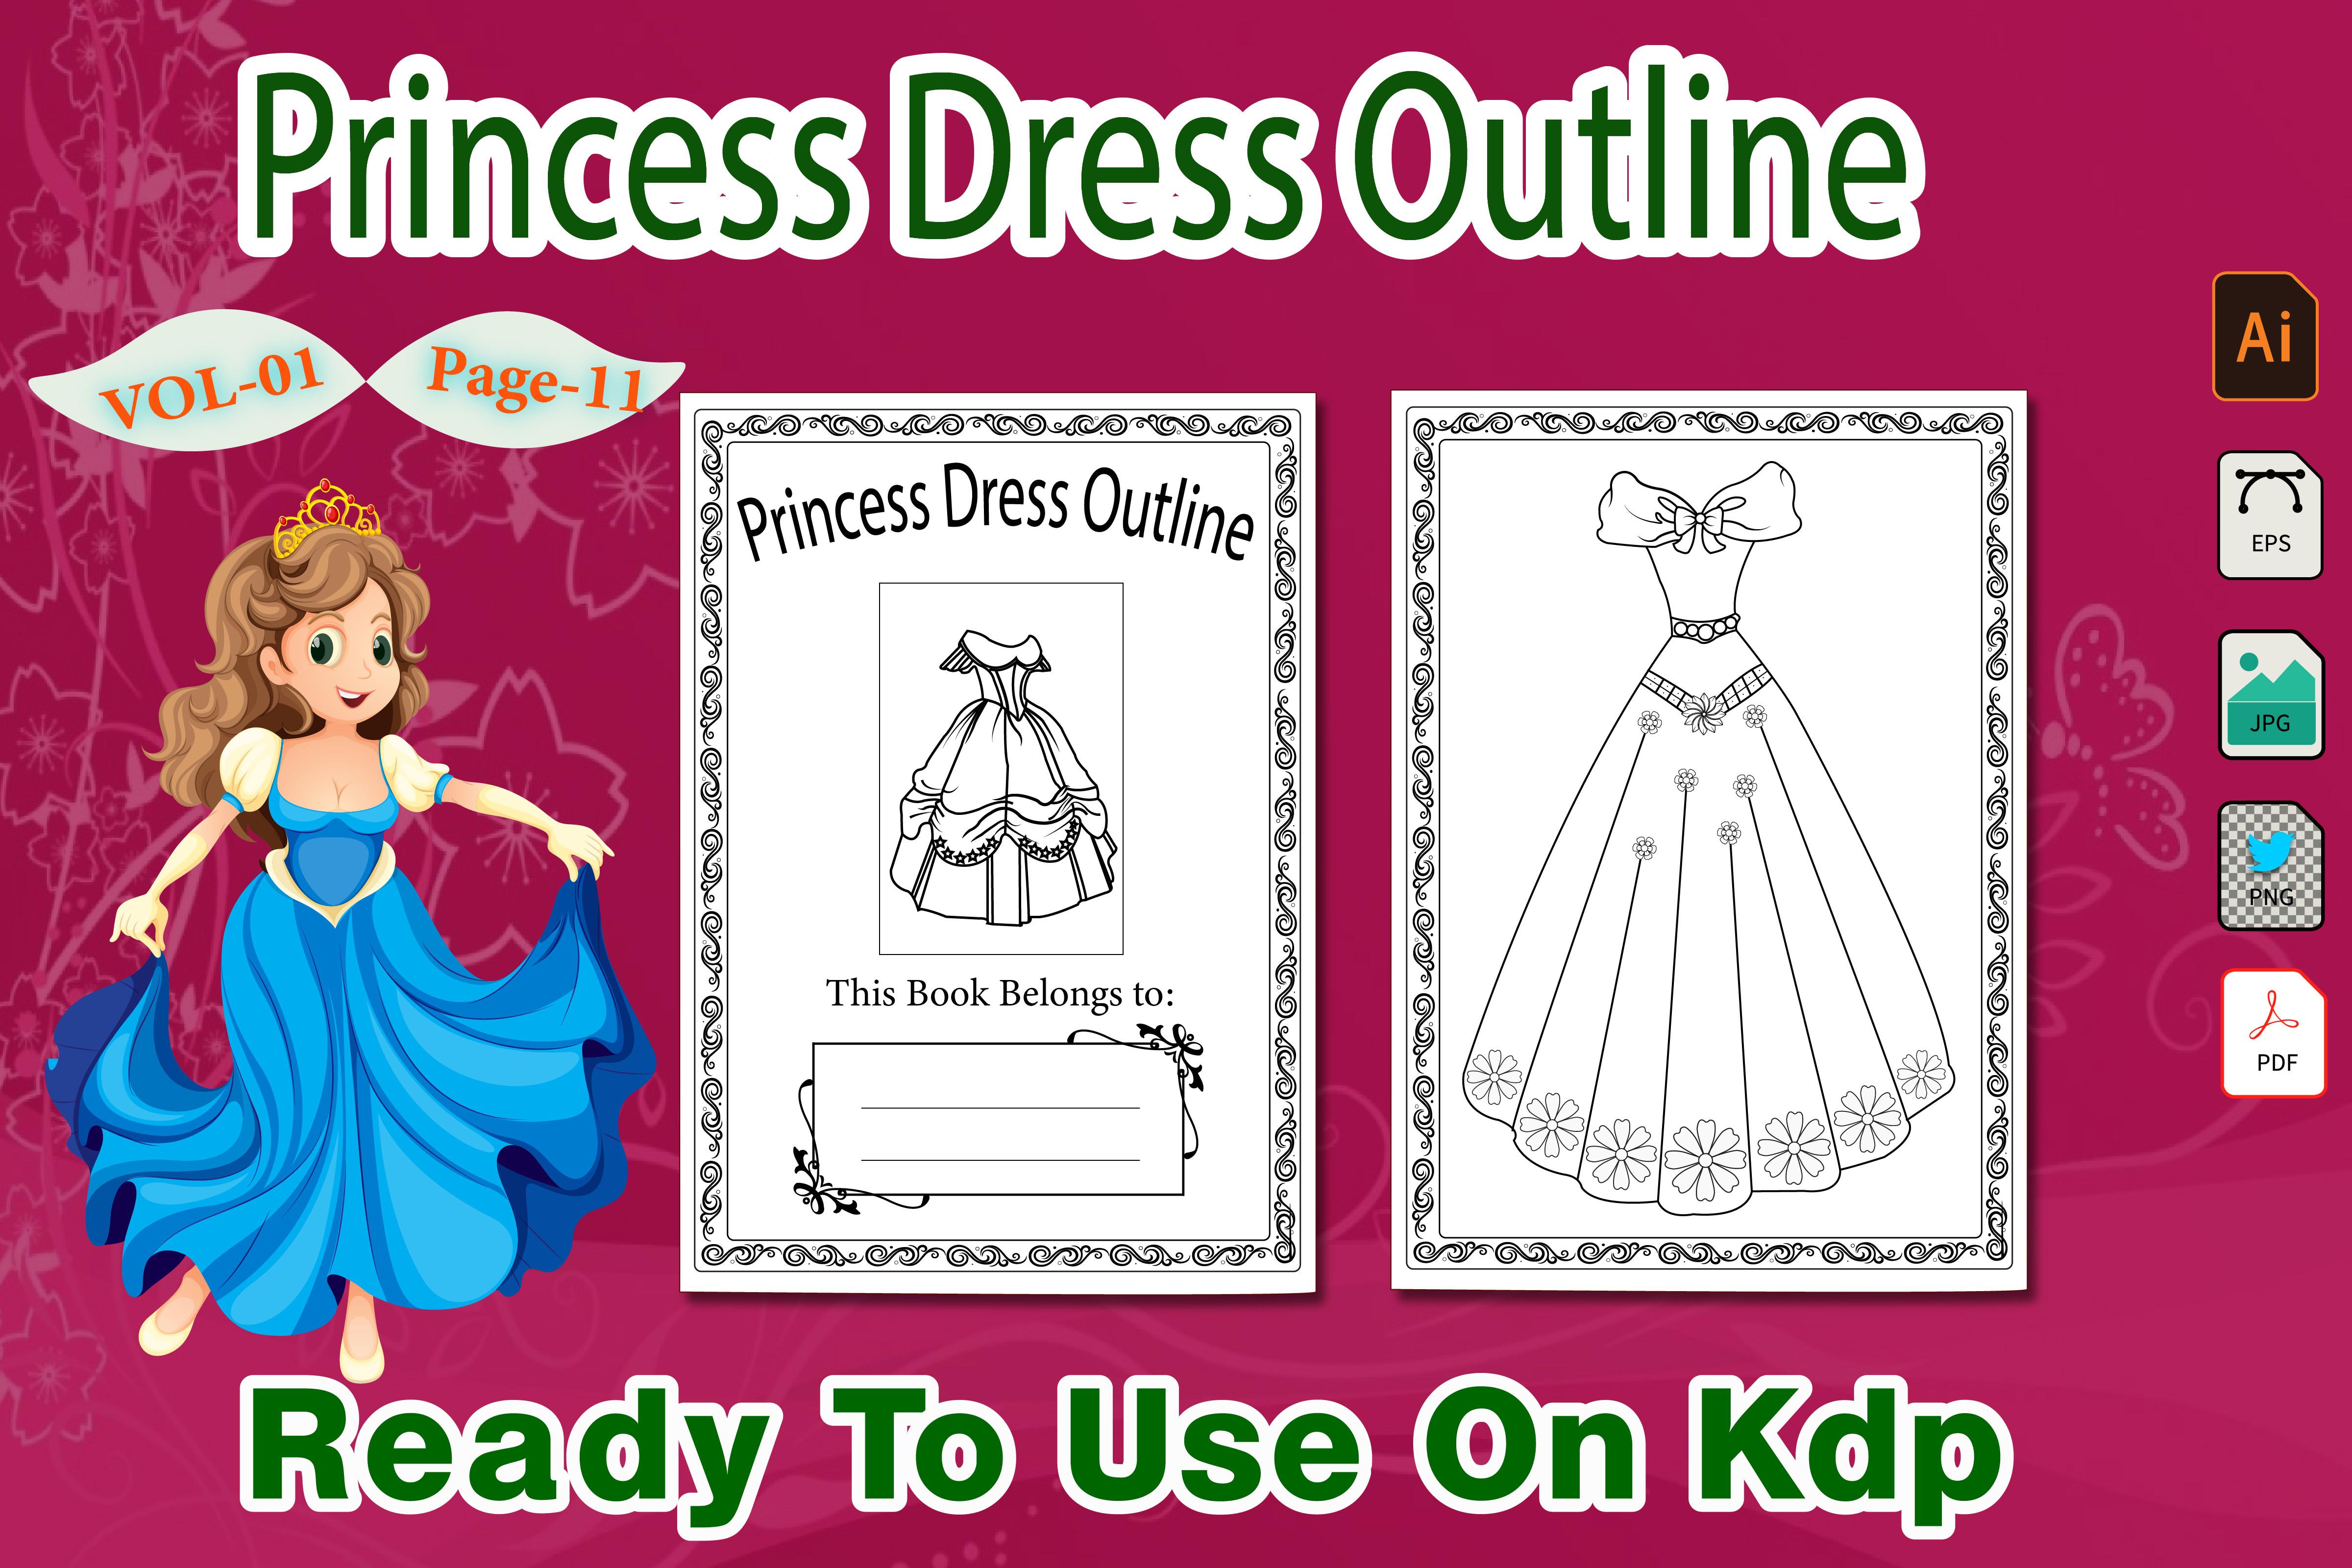 Barbie Princess Dress Outline Vol-01